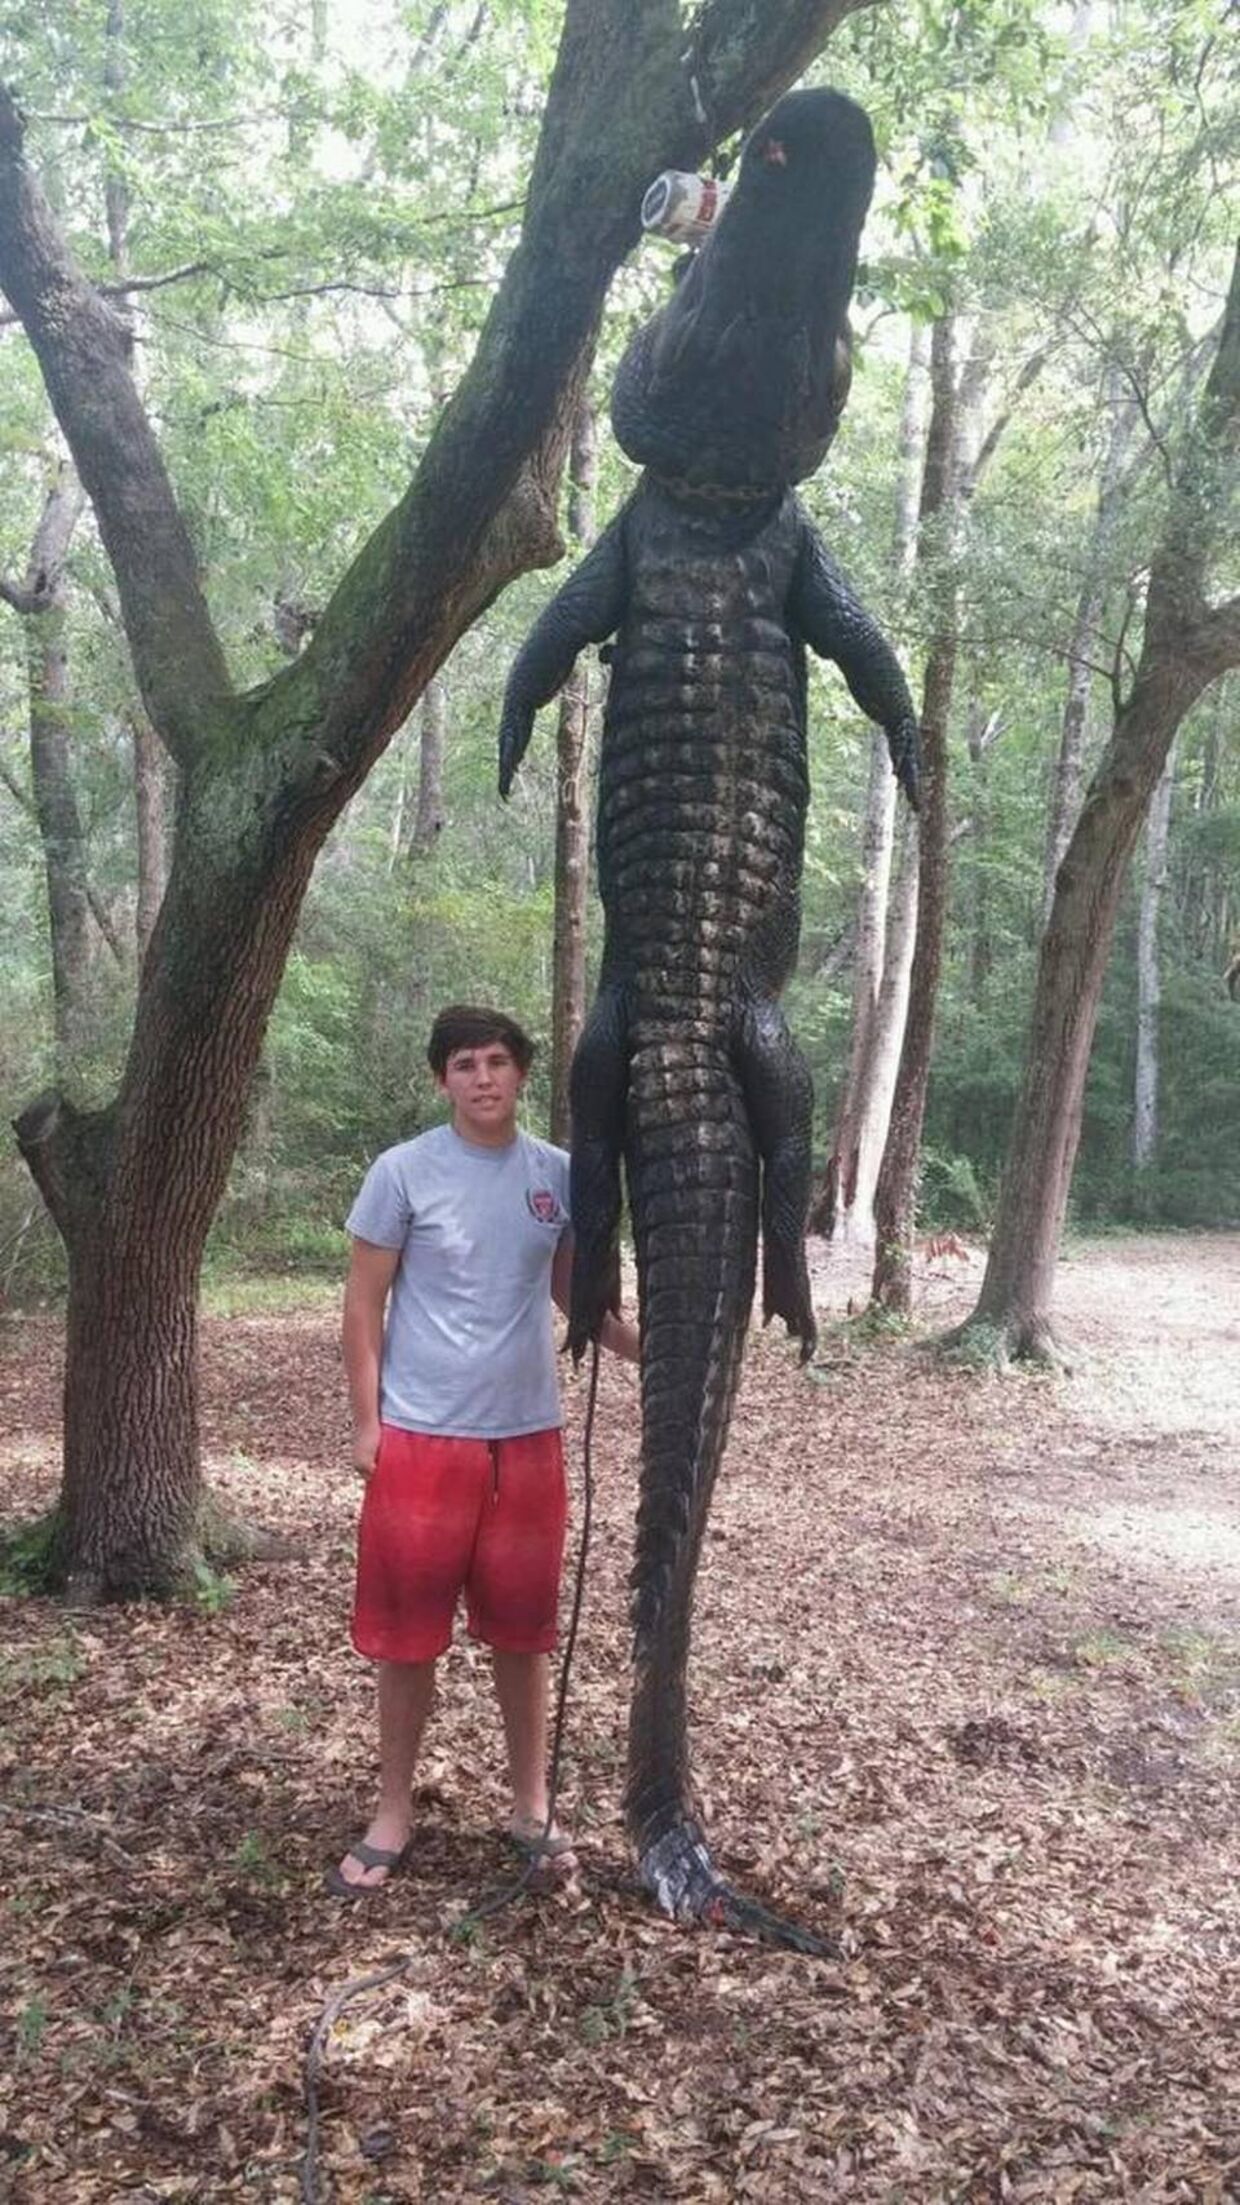 Her ses 16-årige Gavin McDowell ved siden af den enorme alligator, som han hjalp sin far og resten af jagtholdet med at fange i Waccamaw River.